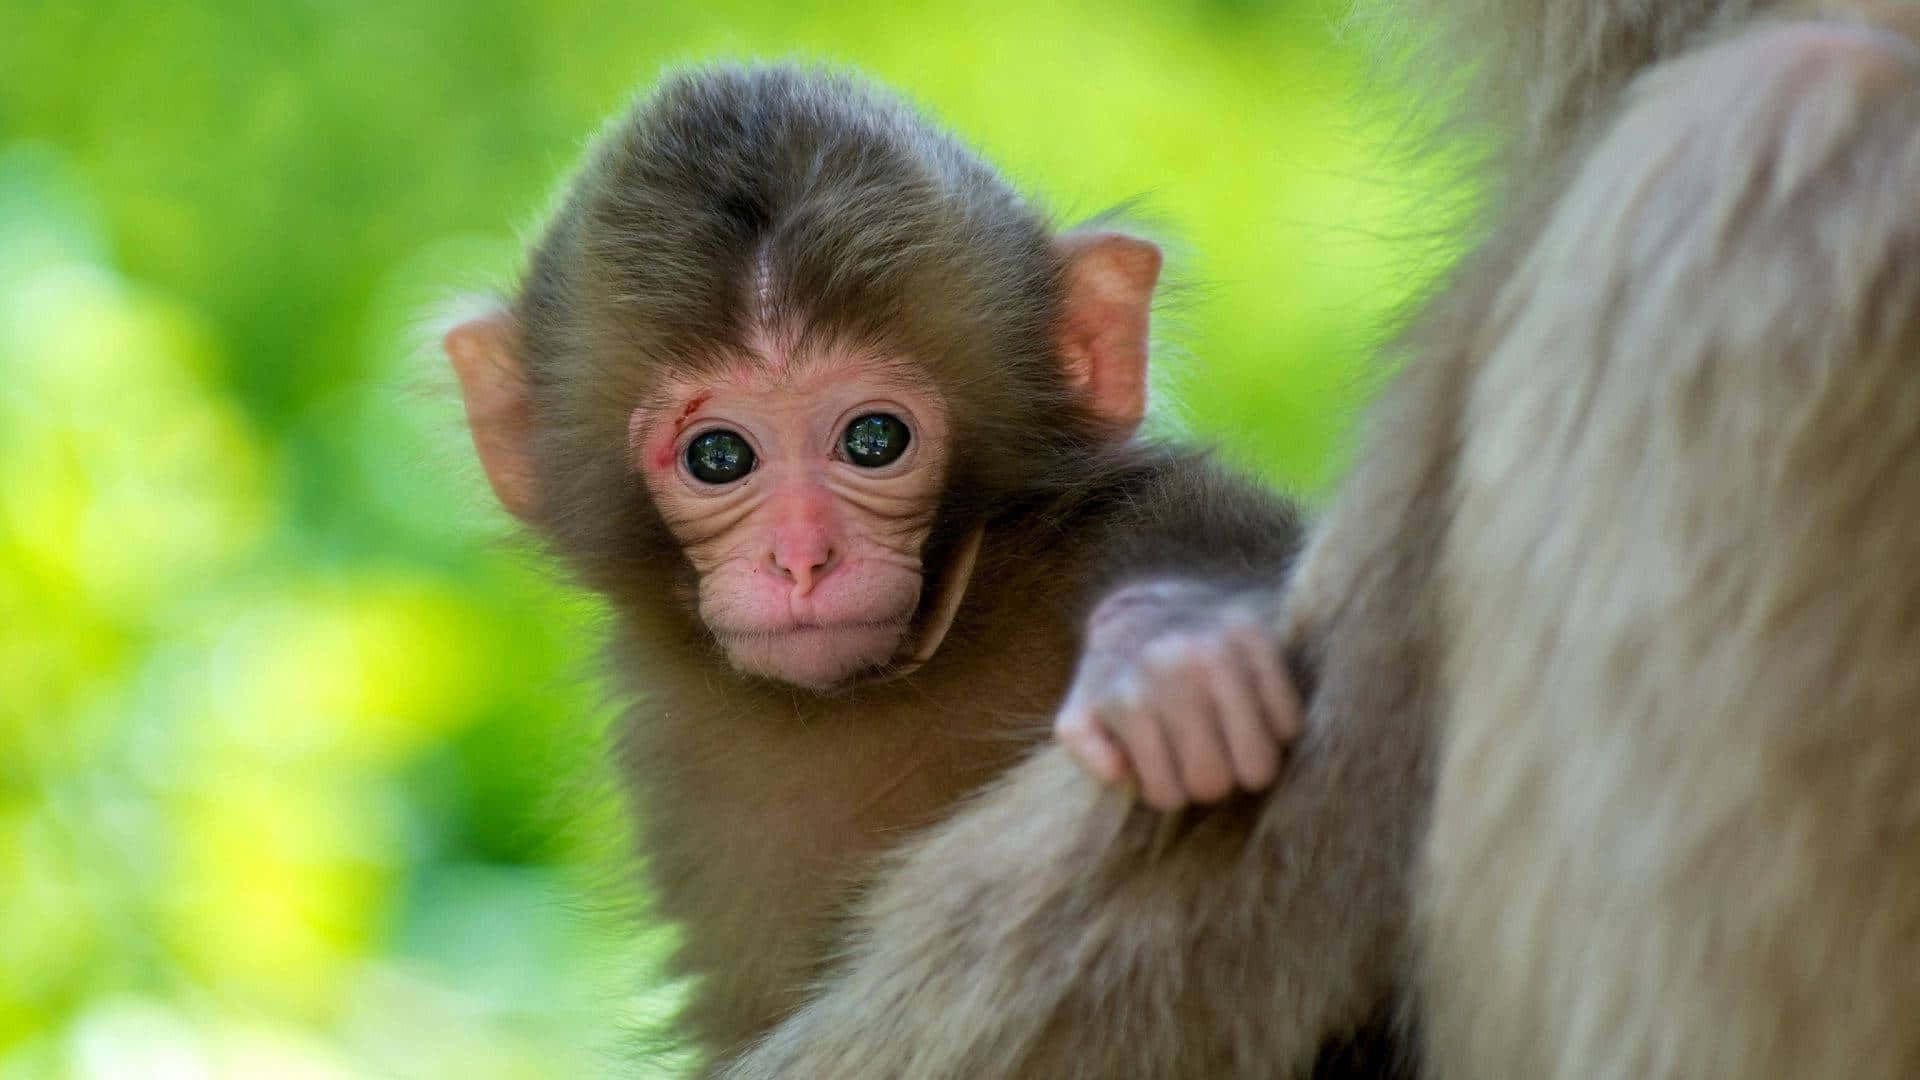 "adorable Baby Monkey Enjoying Nature's Embrace"